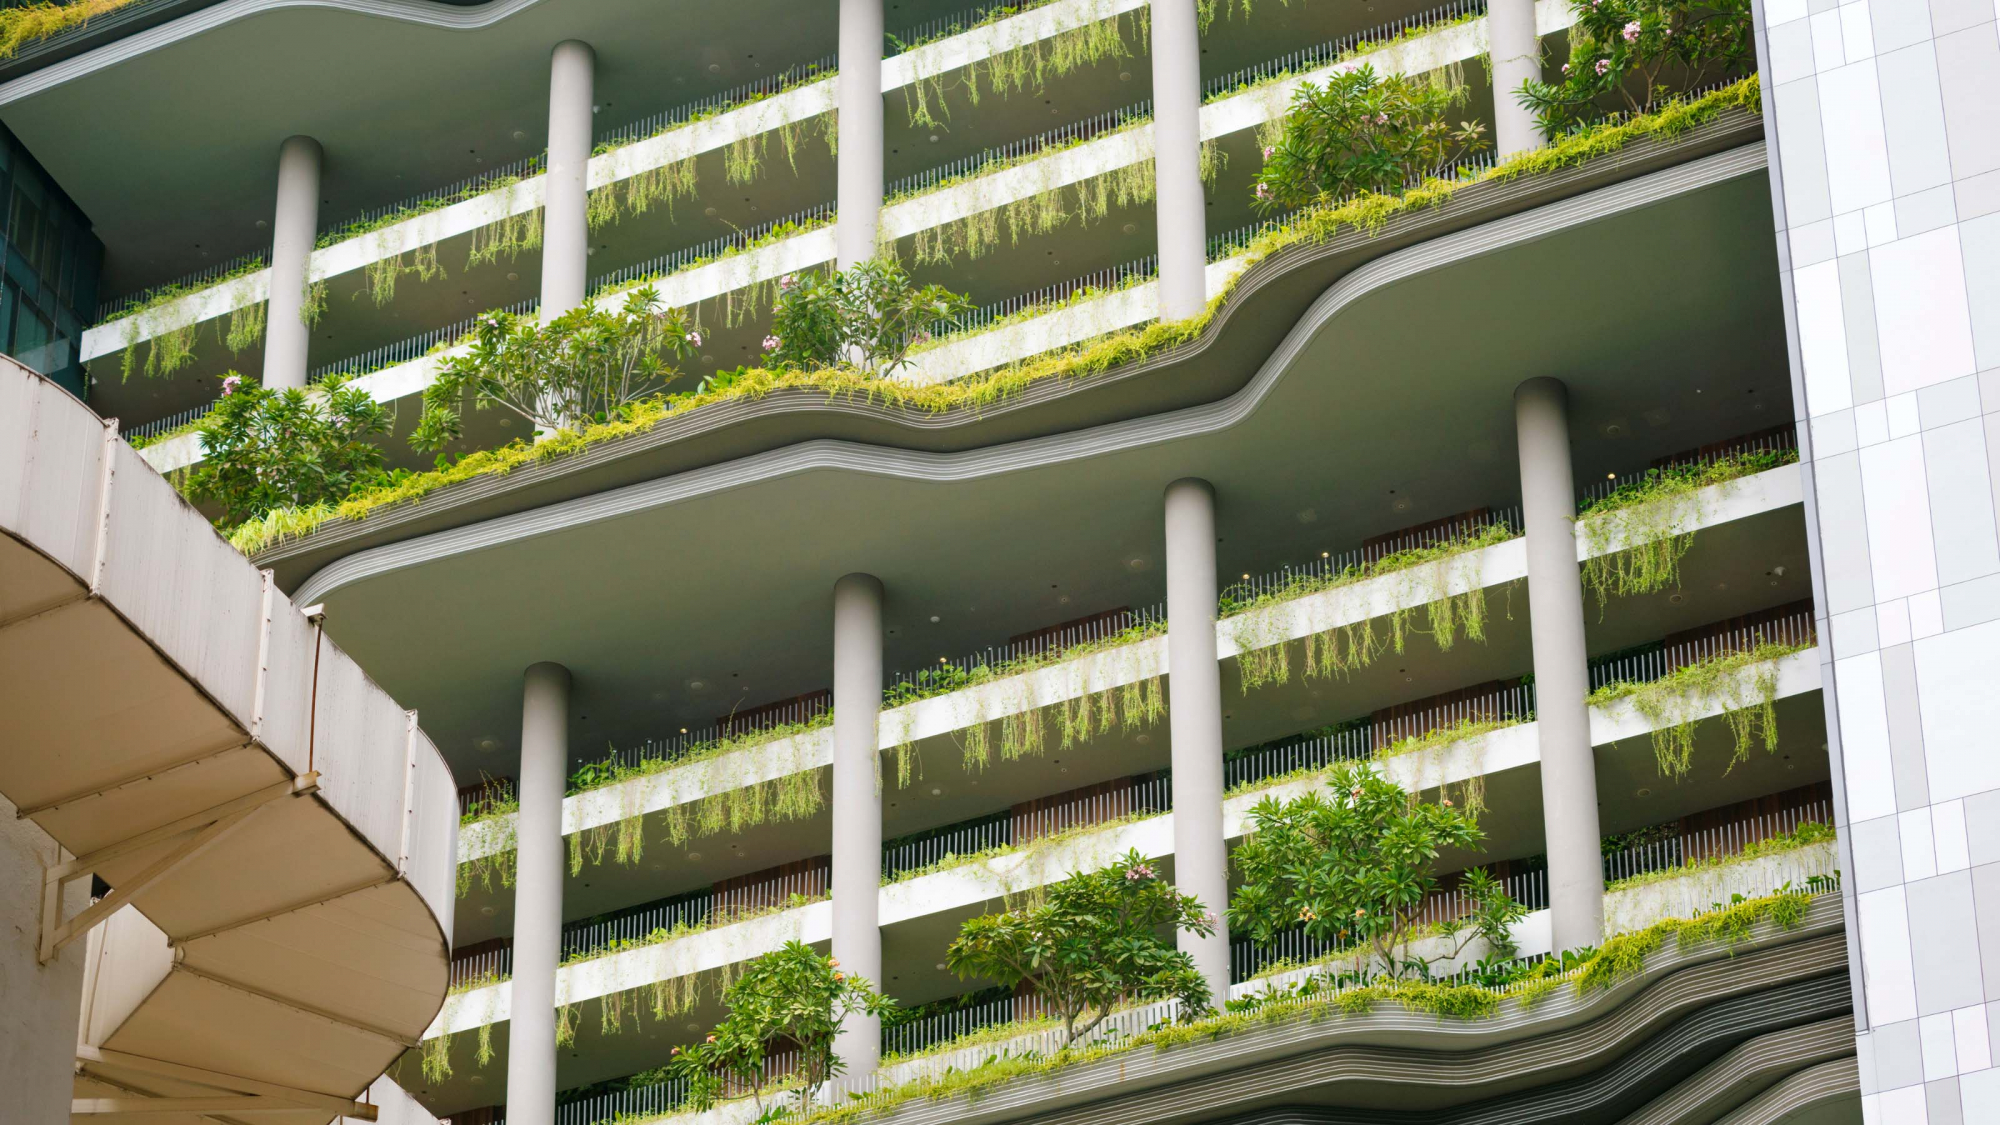 Balkone mit grünen Pflanzen an einem Hochhaus